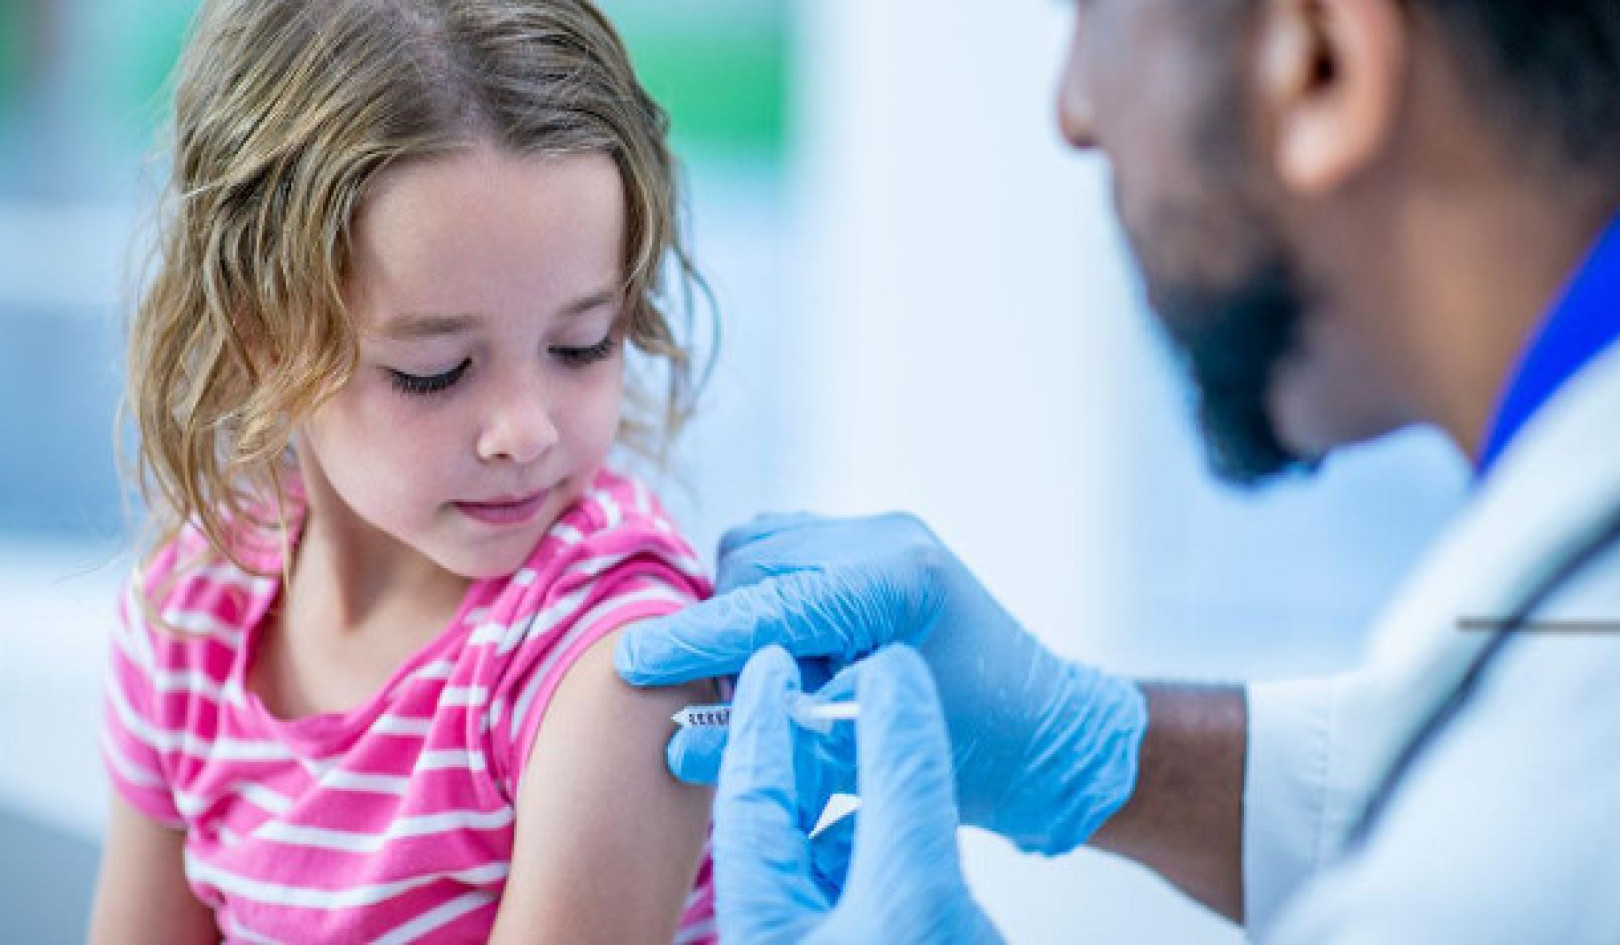 ทำความเข้าใจกับศรัทธาที่ลดน้อยลงของอเมริกาในเรื่องการฉีดวัคซีน